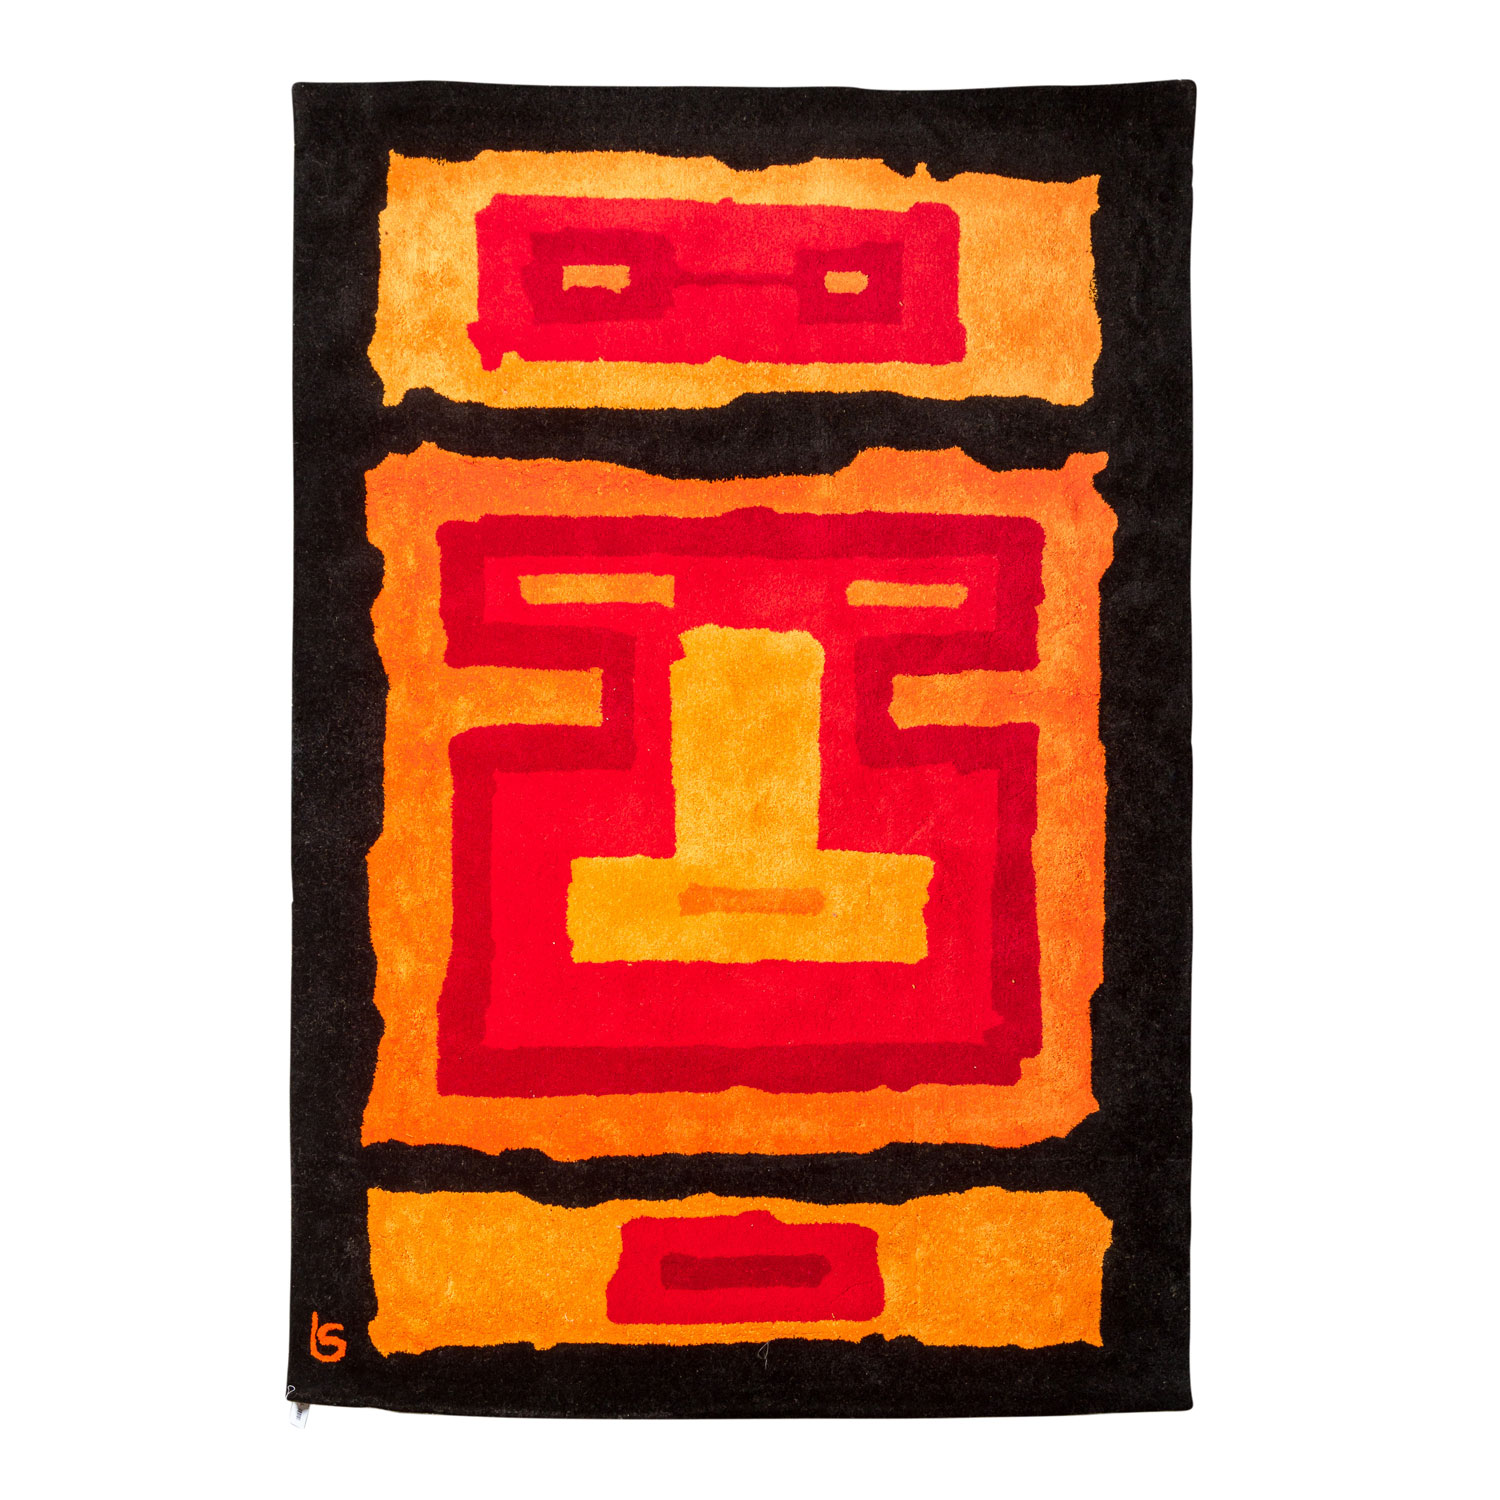 Design Teppich aus Wolle. 1970er Jahre, 248x167 cm.Eine dreigeteilte, abstrakten Form in feurigen